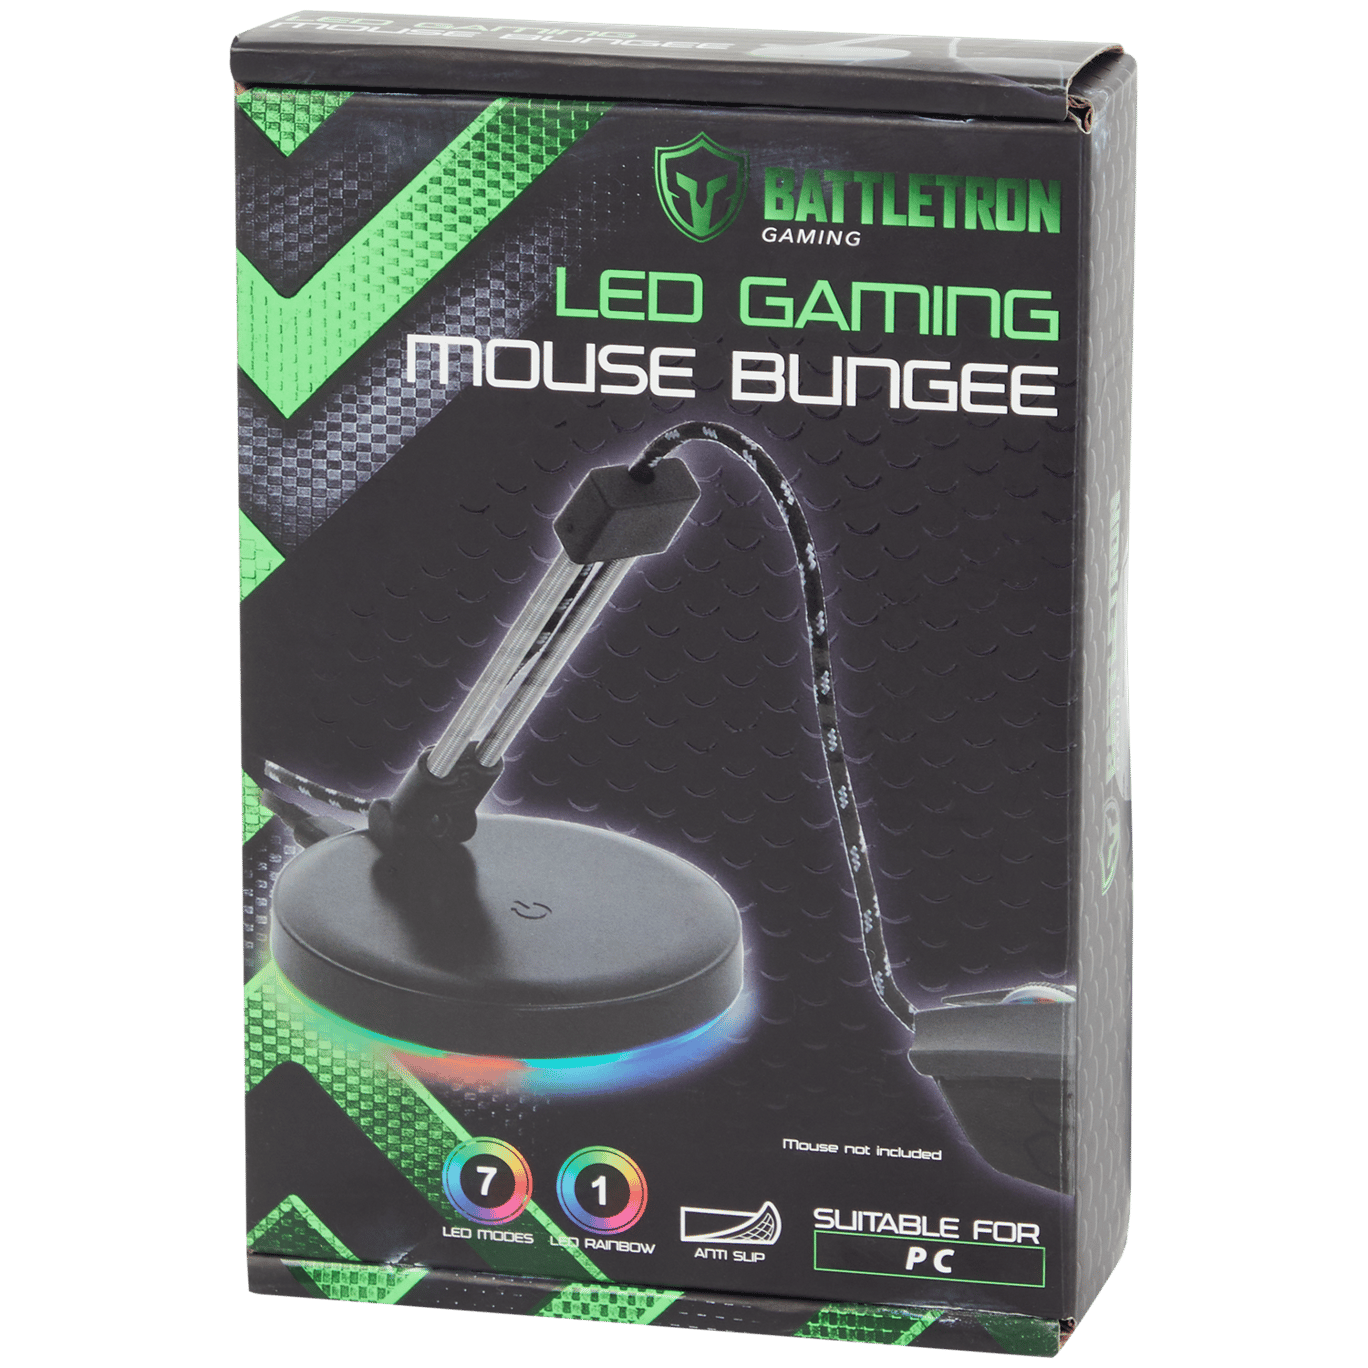 Corda elastica per mouse da gaming Battletron